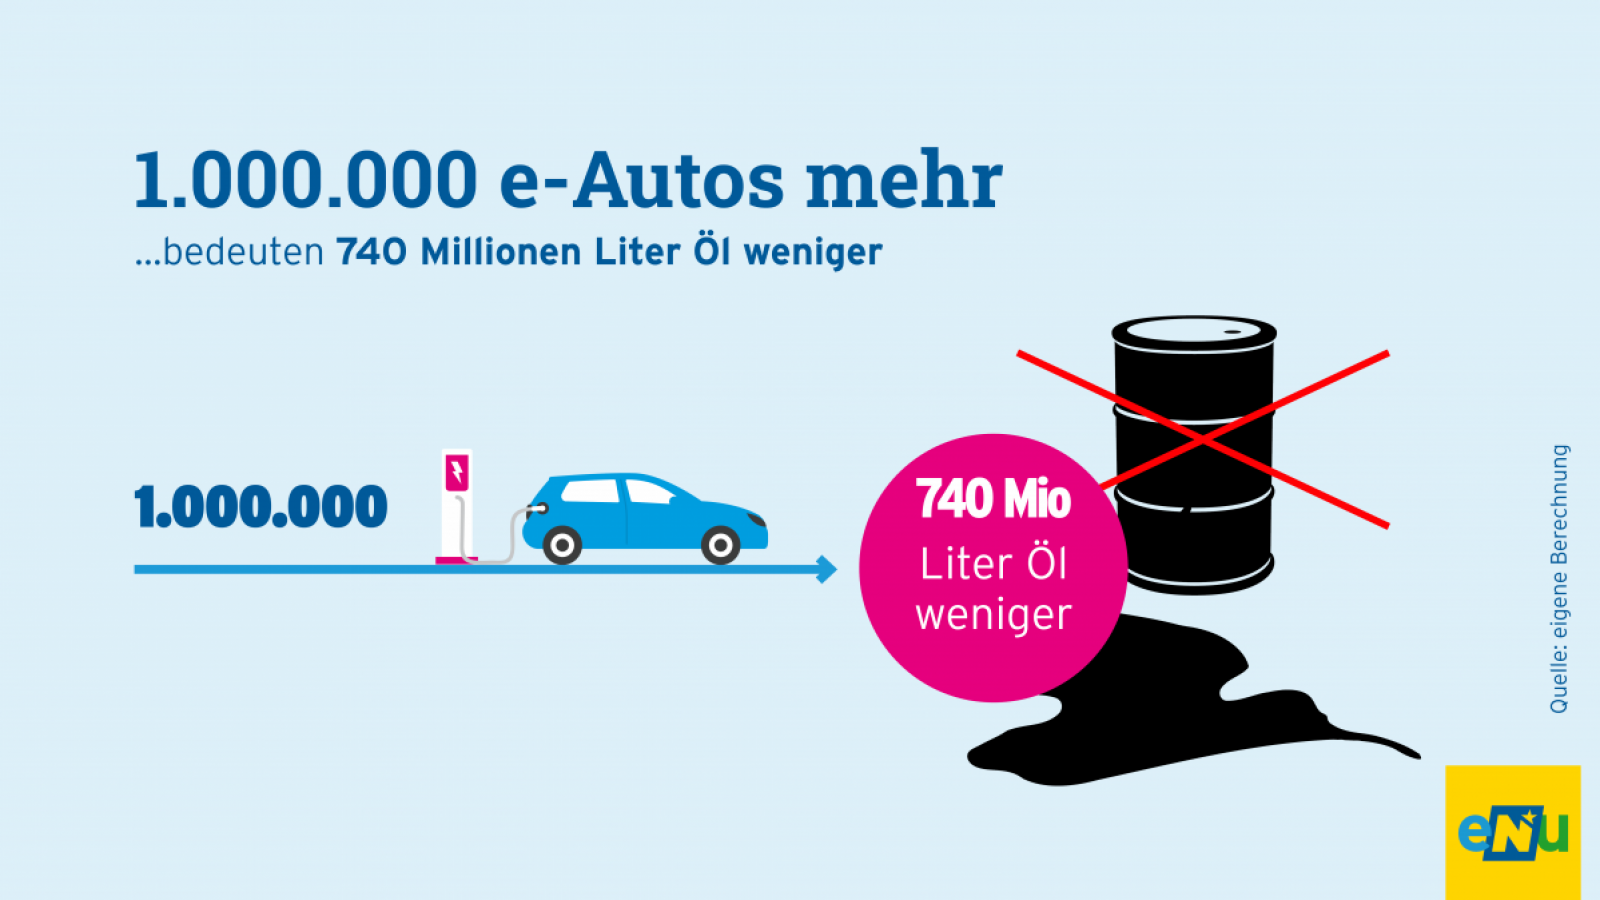 Grafik: 50.000 e-Autos mehr, bedeuten eine Einsparung von 35 Millionen Liter Erdöl pro Jahr. Die Stromversorgung dieser 50.000 e-Autos kann durch 16 neue Windräder abgedeckt werden.